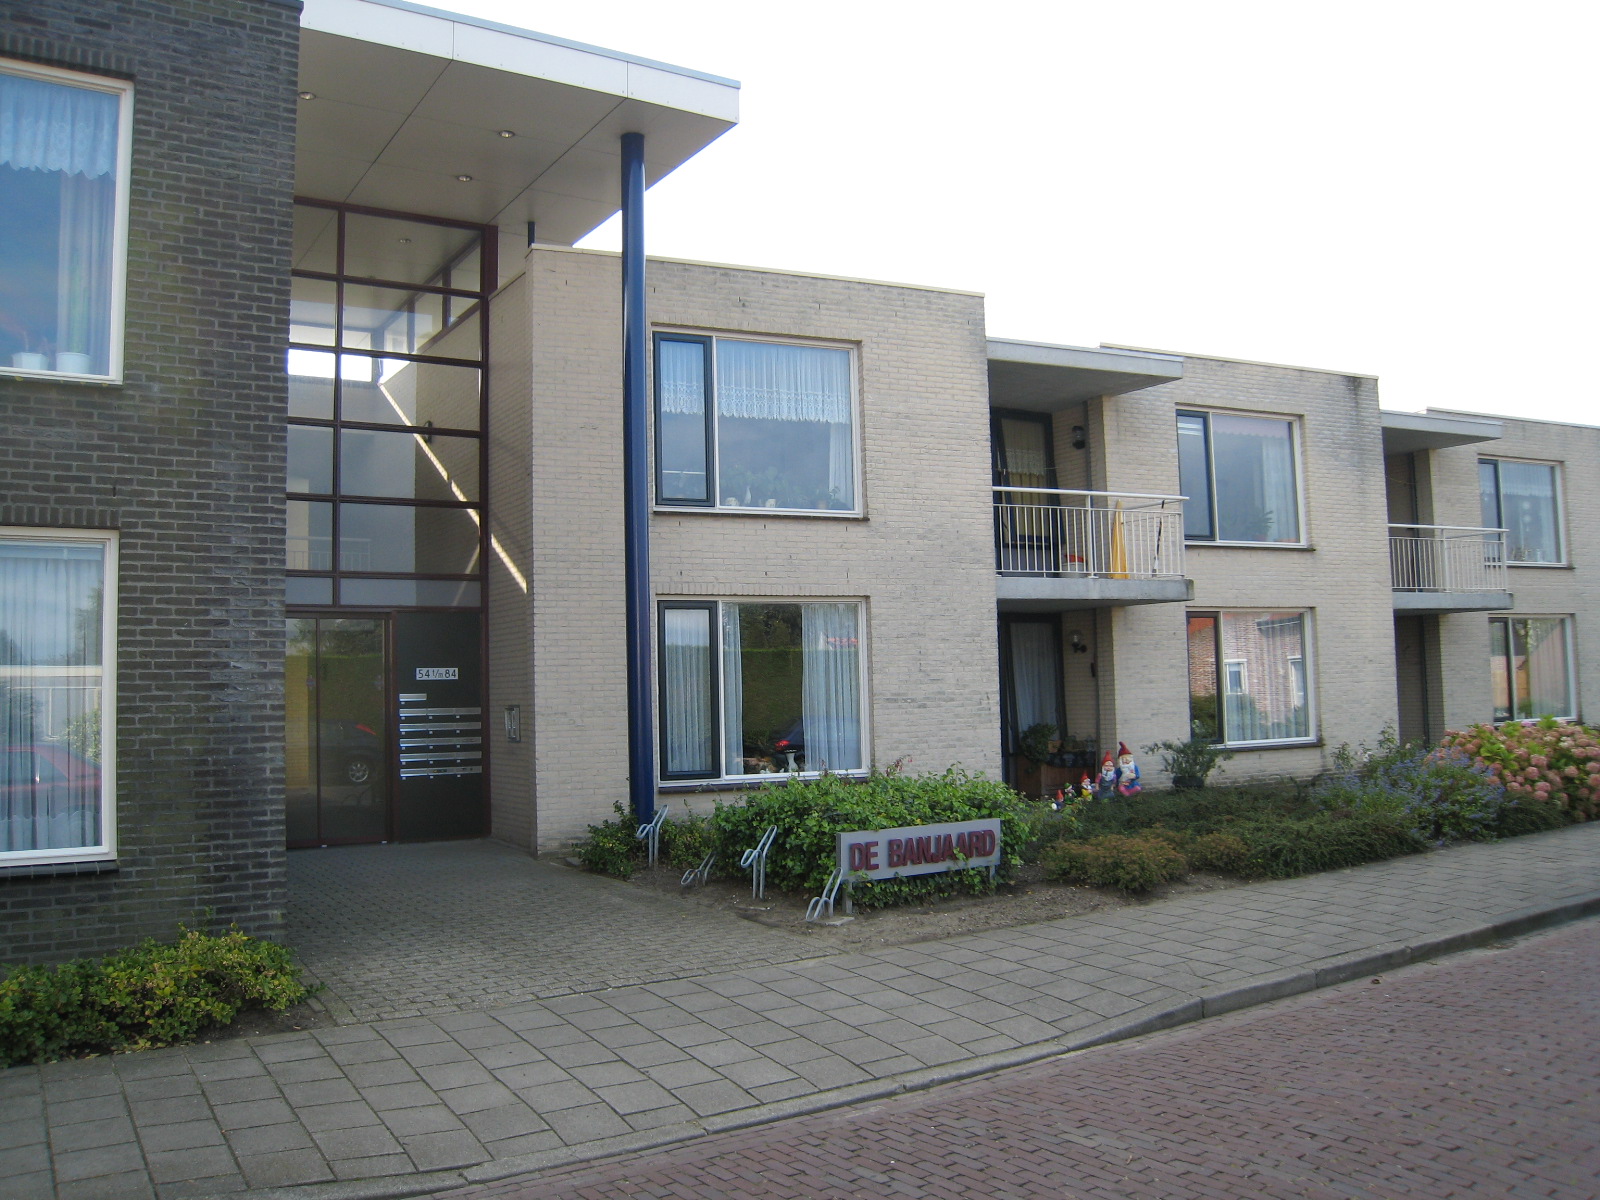 Banjaardstraat 80, 4456 BR Lewedorp, Nederland